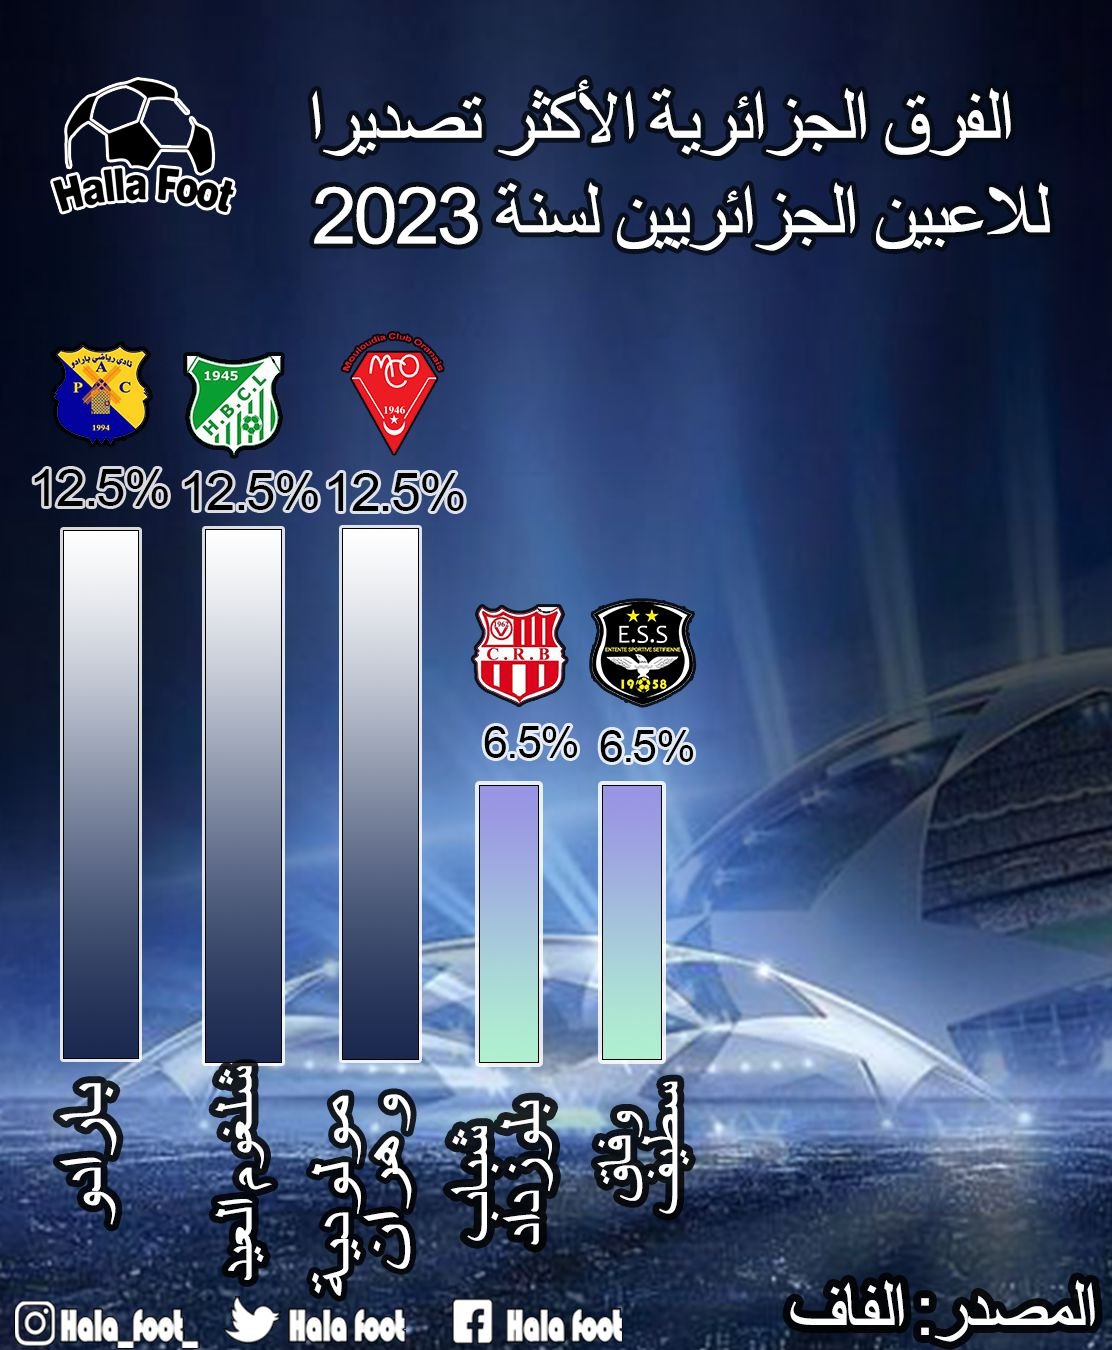 هذه الأندية الأكثر تصديرا للمحترفين الجزائريين لسنة 2023